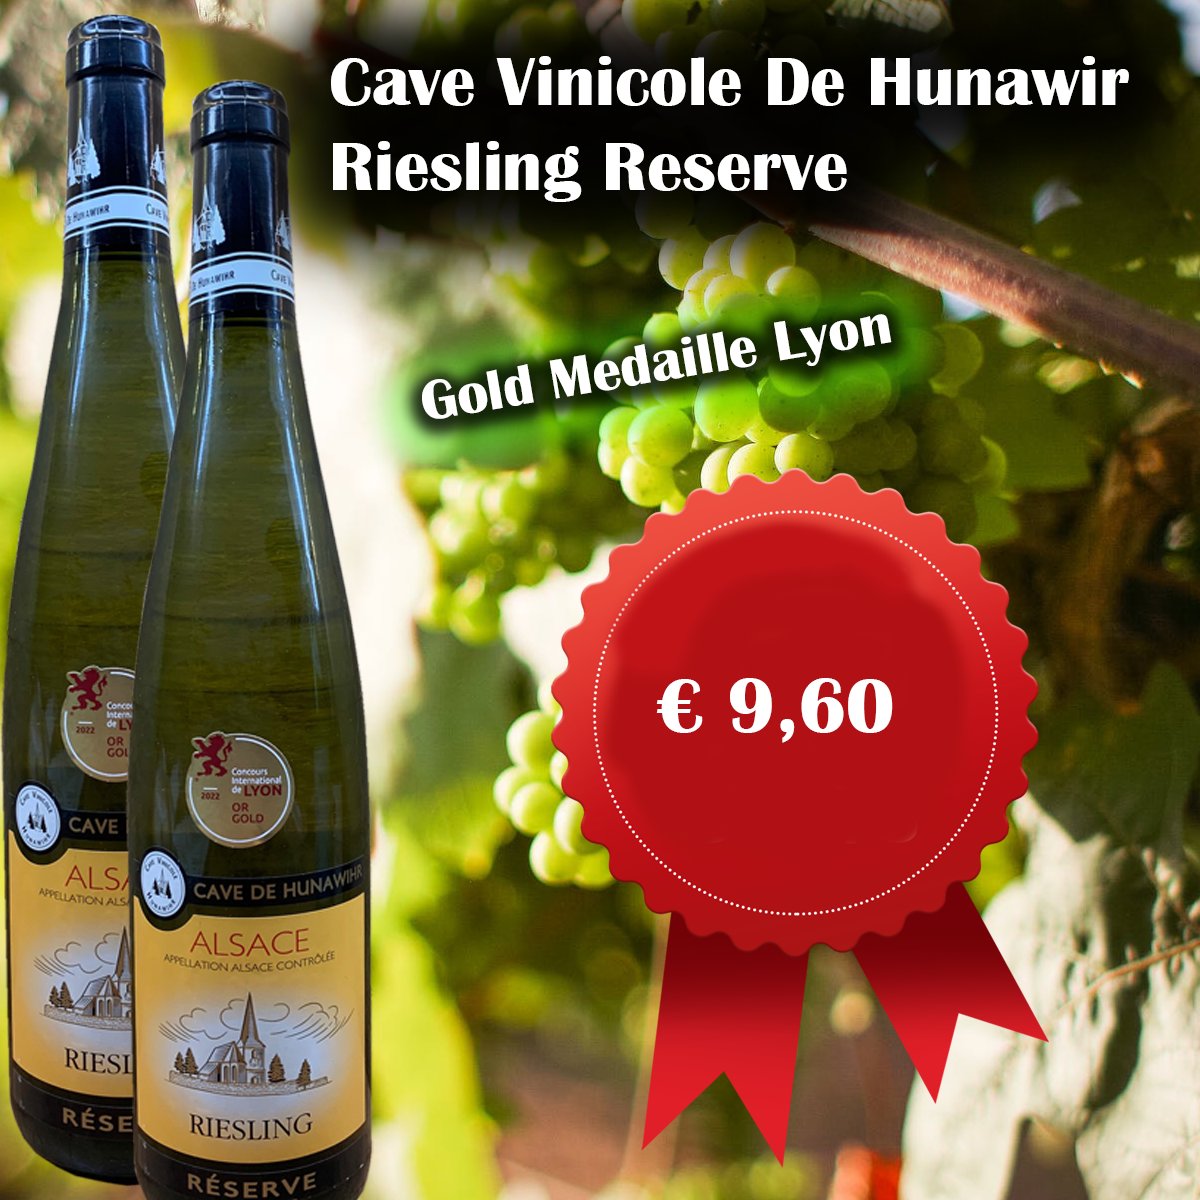 Cave Vinicole De Hunawir Riesling Reserve
wijnhandelgrandcave.nl/nl/1475-cave-v…
 #wijn #wine #elzas #vino #instawine #winestagram #wijntje #winetime #wijnisfijn #winegeek #wein #wijnen #genieten #Riesling #yerseke #zeeland #wijnhandelgrandcave #wijnonline #winelovers